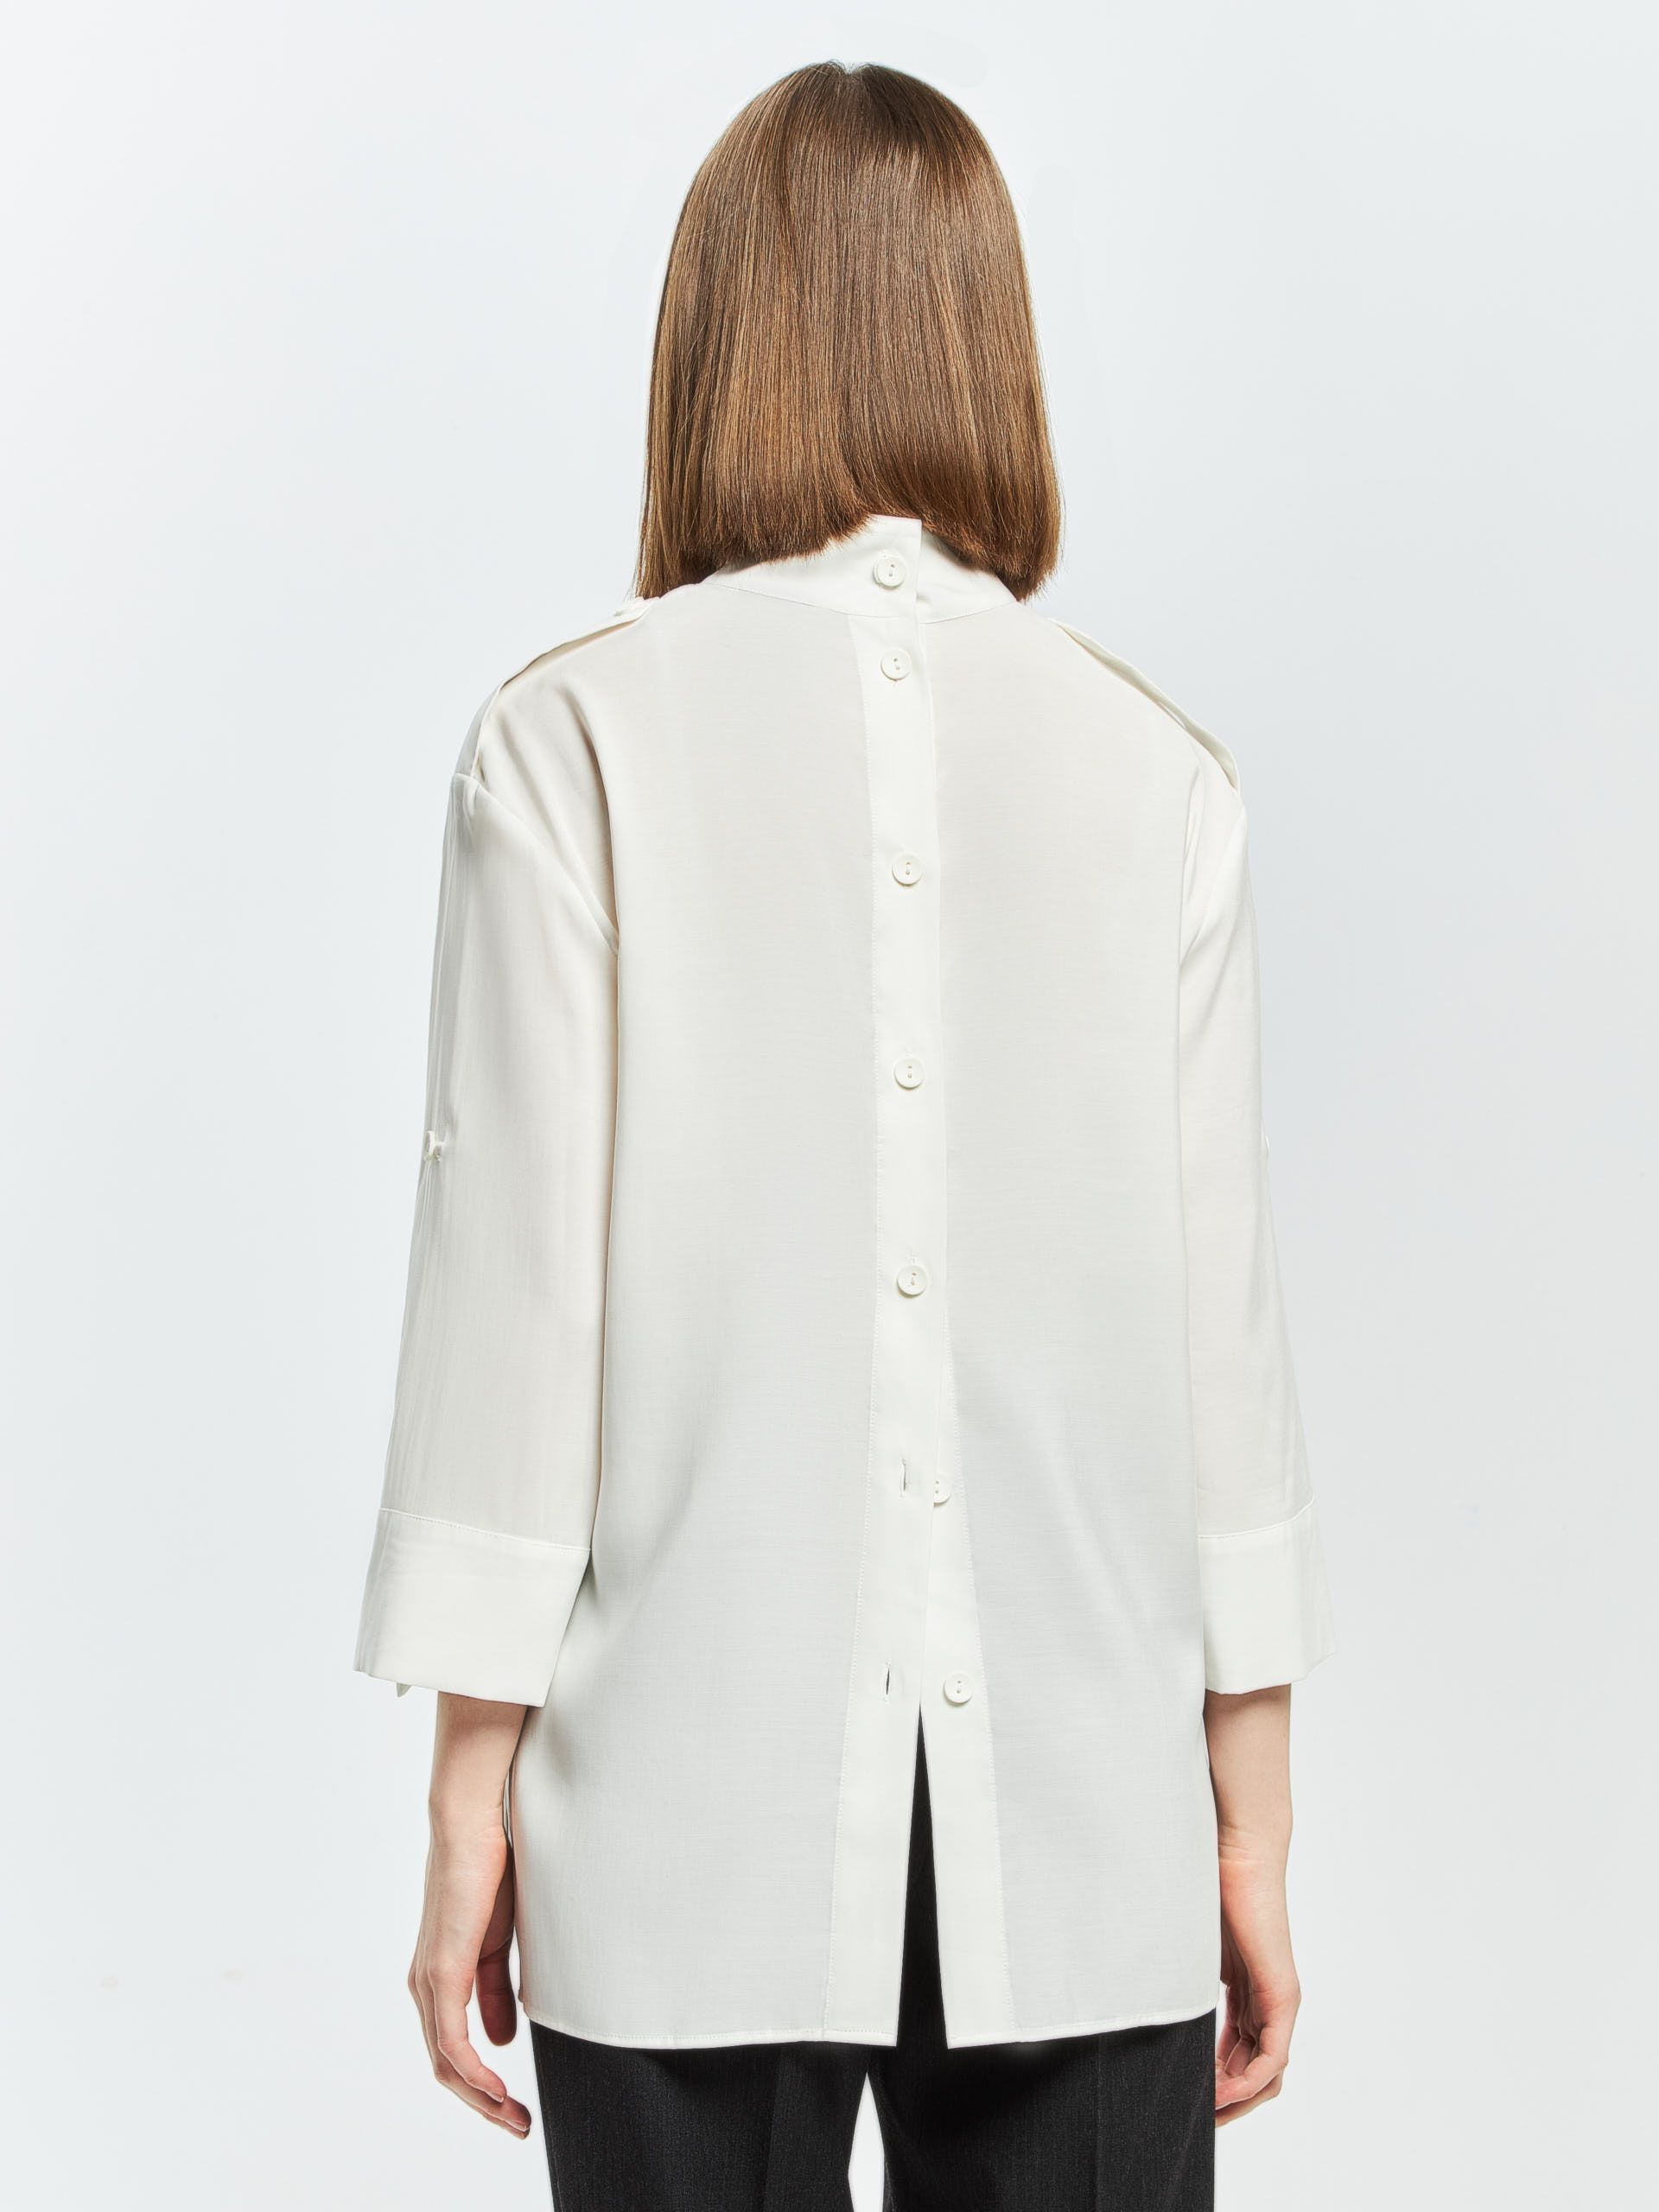 Стильная лёгкая блузка ALTUM из 100% экологичного модала. Изображение 3